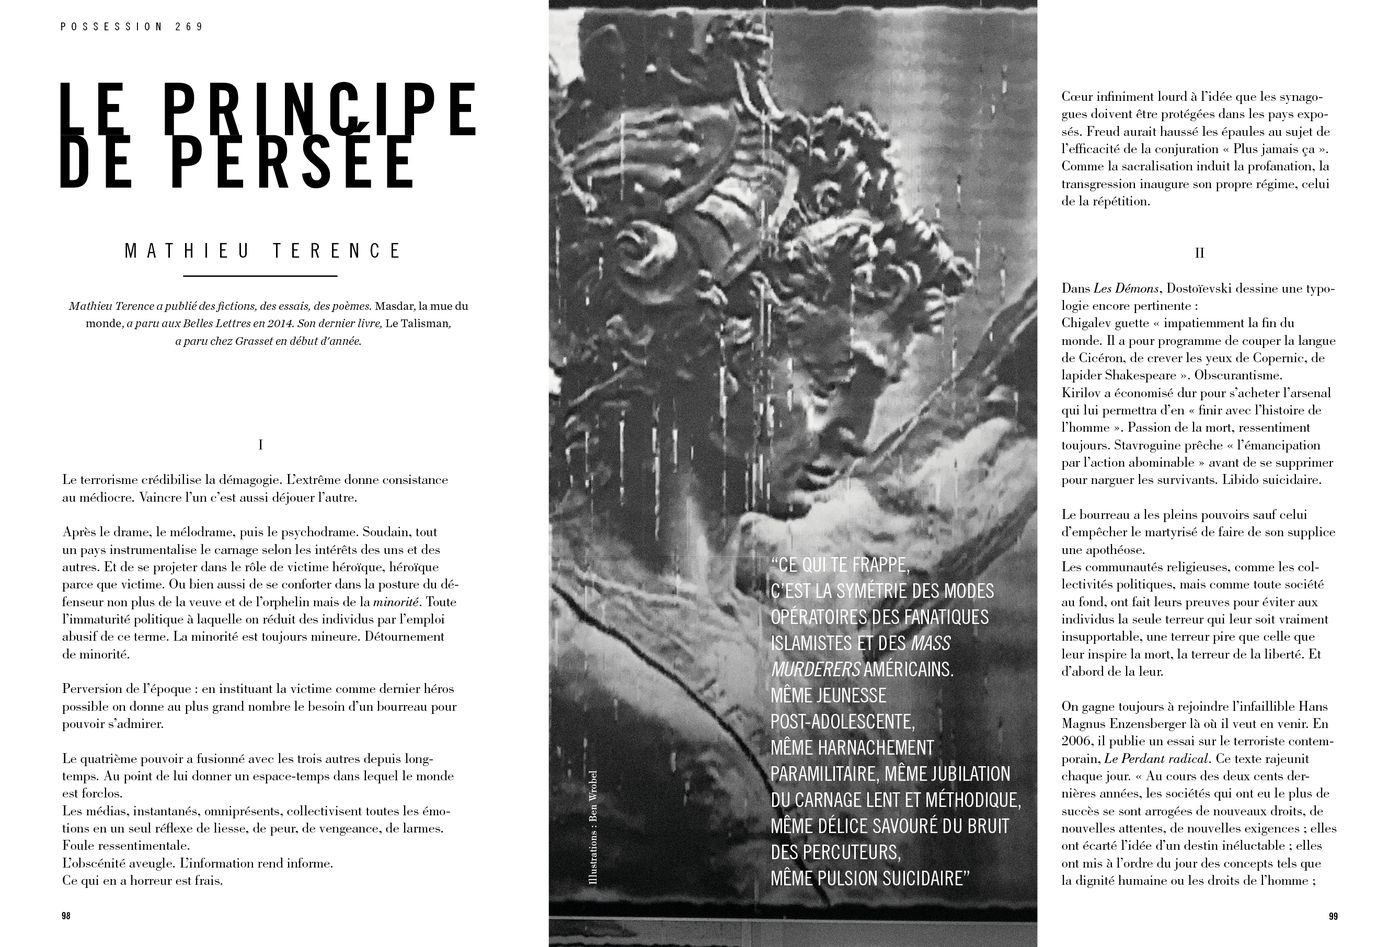 Possession Immédiate Volume 5 - Texte de Mathieu Terence, Le Principe de Persée